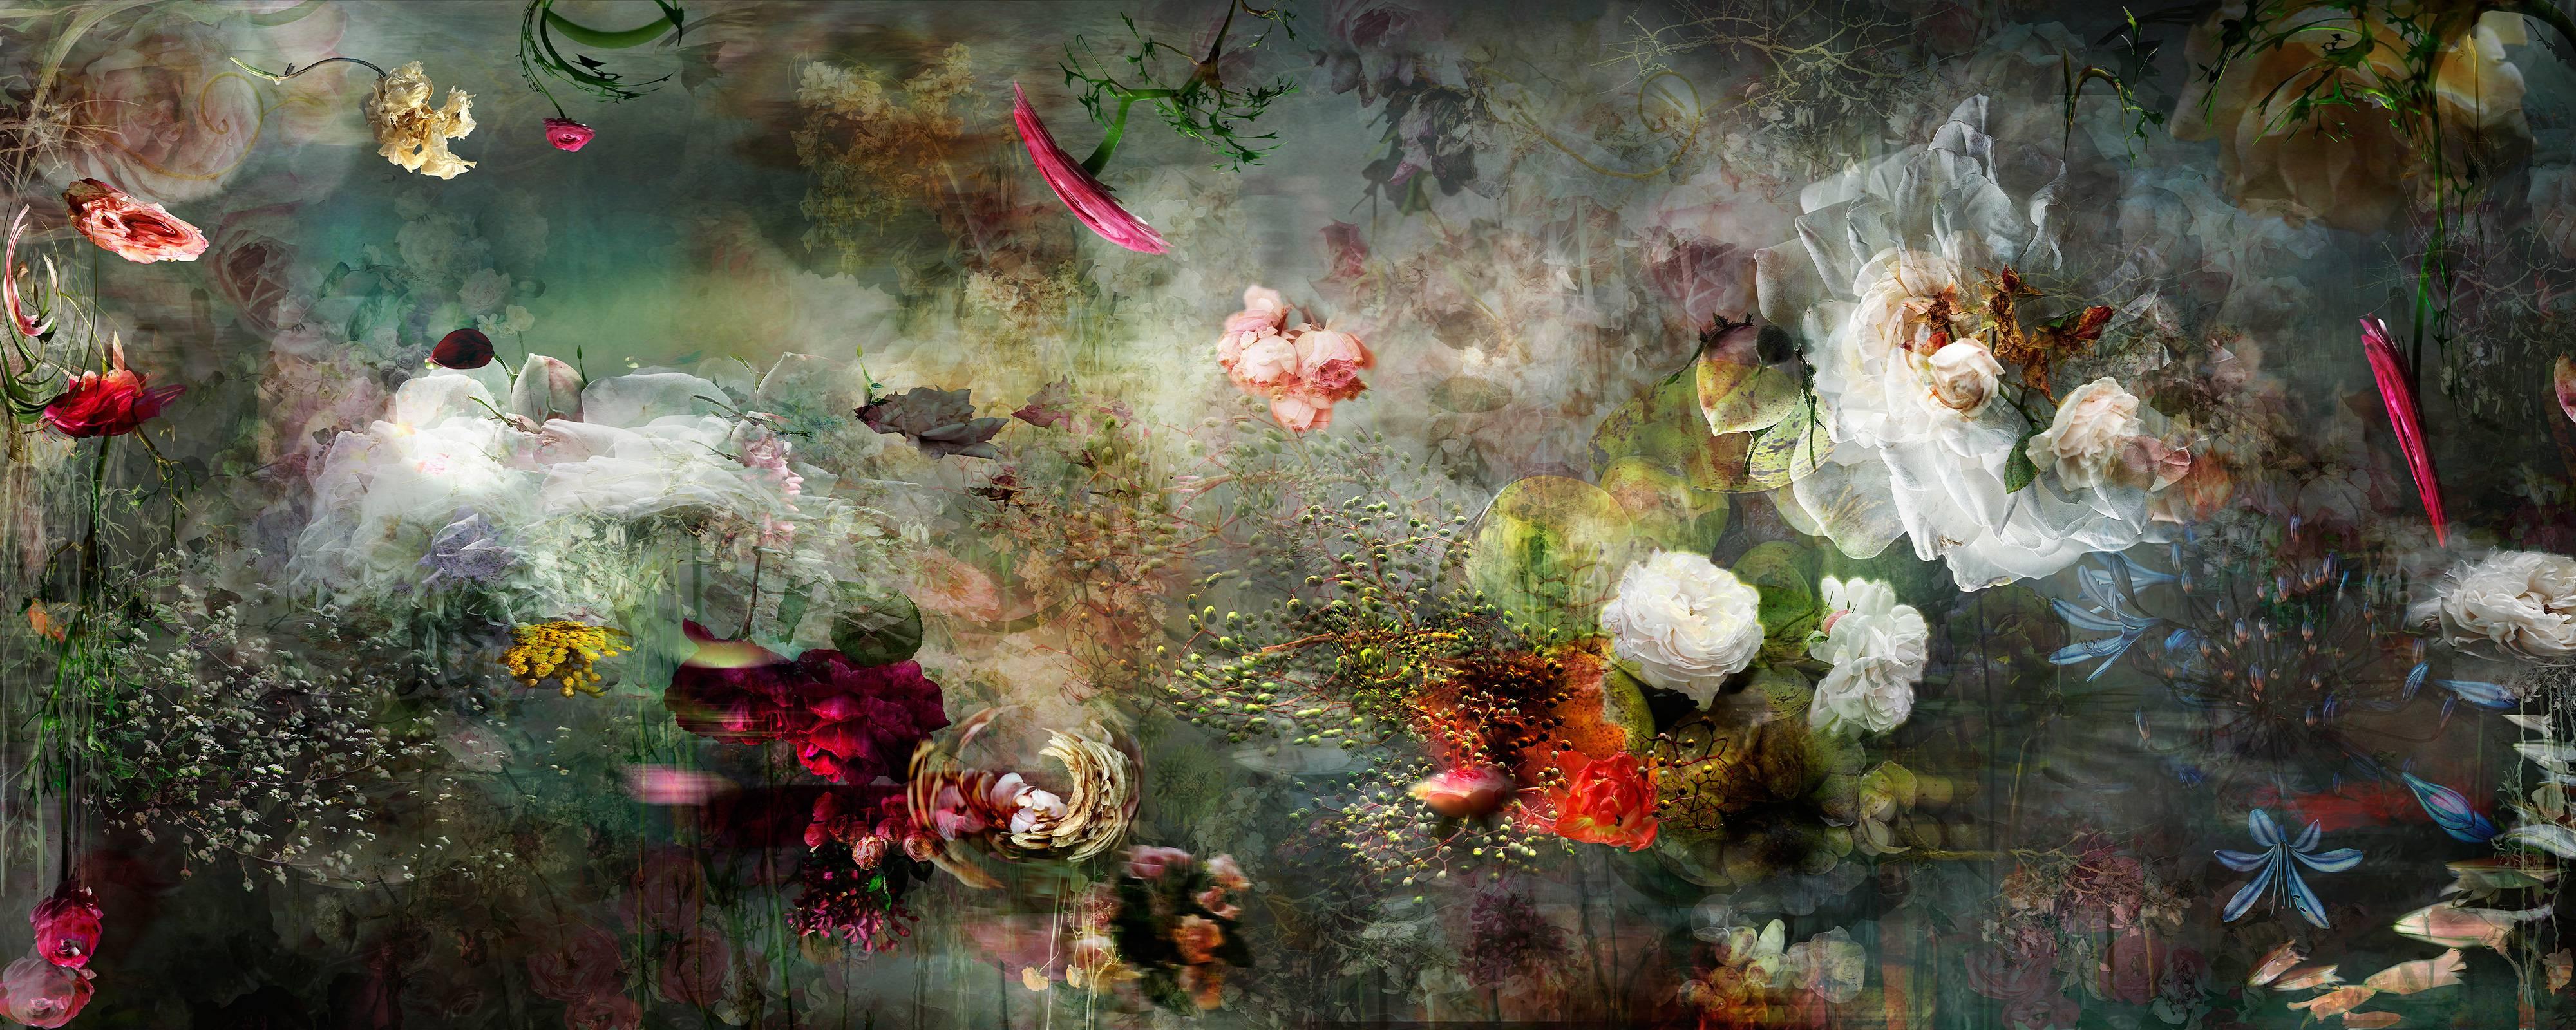 Song for dead heroes #2 composition de photo de paysage floral abstrait de couleur foncée